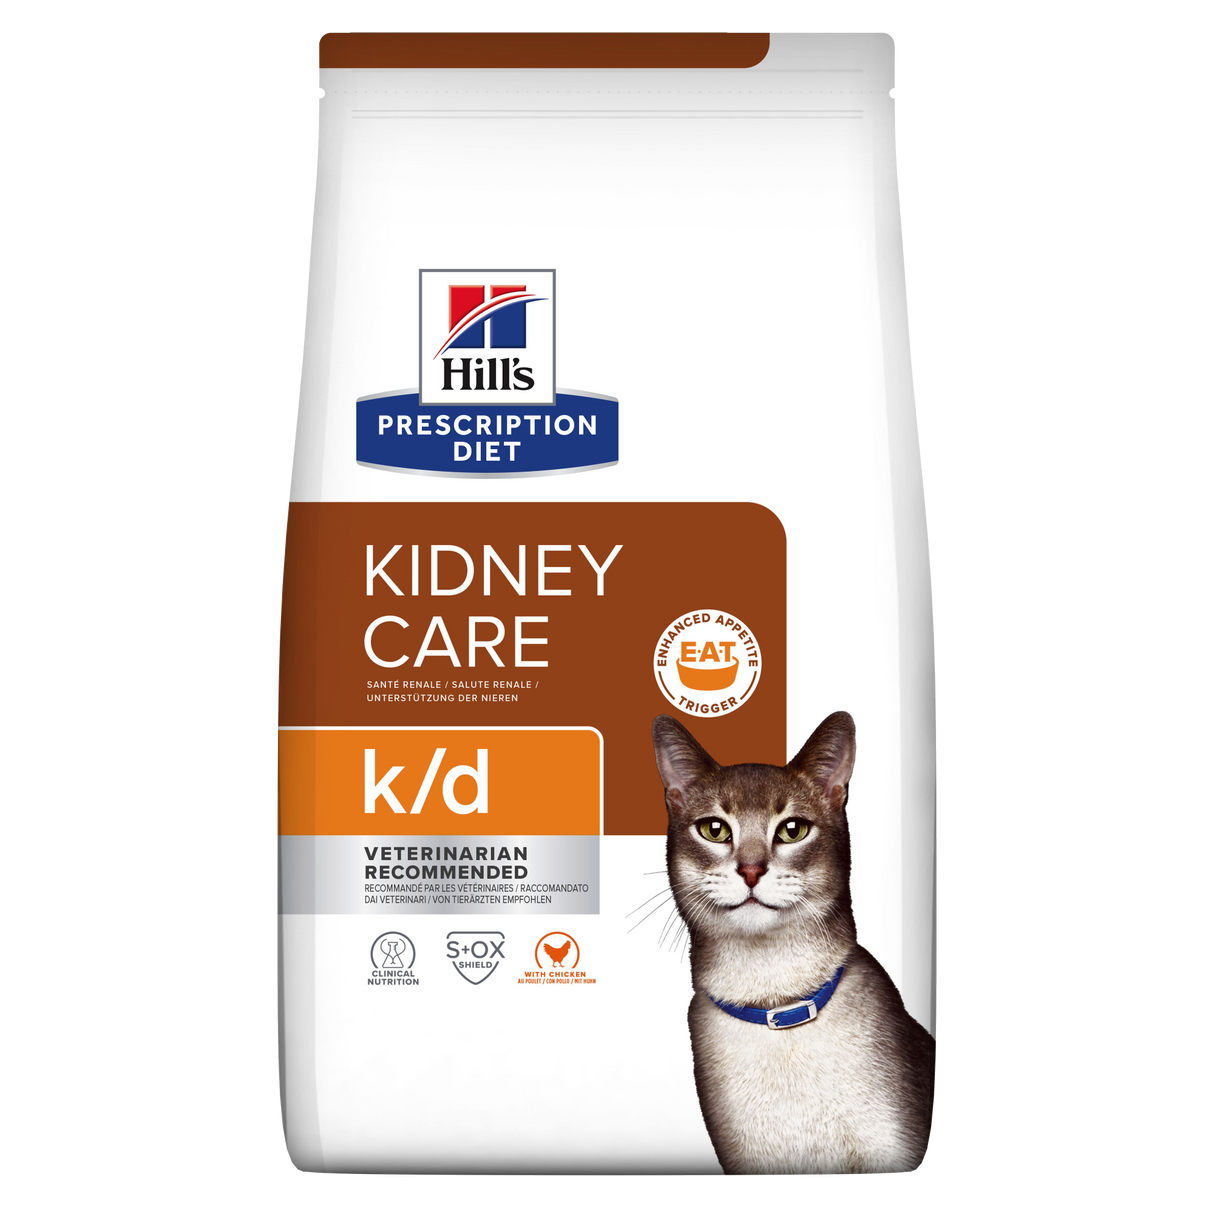 Hill's PRESCRIPTION DIET k/d Kidney Care tørfoder til katte med kylling 8kg pose